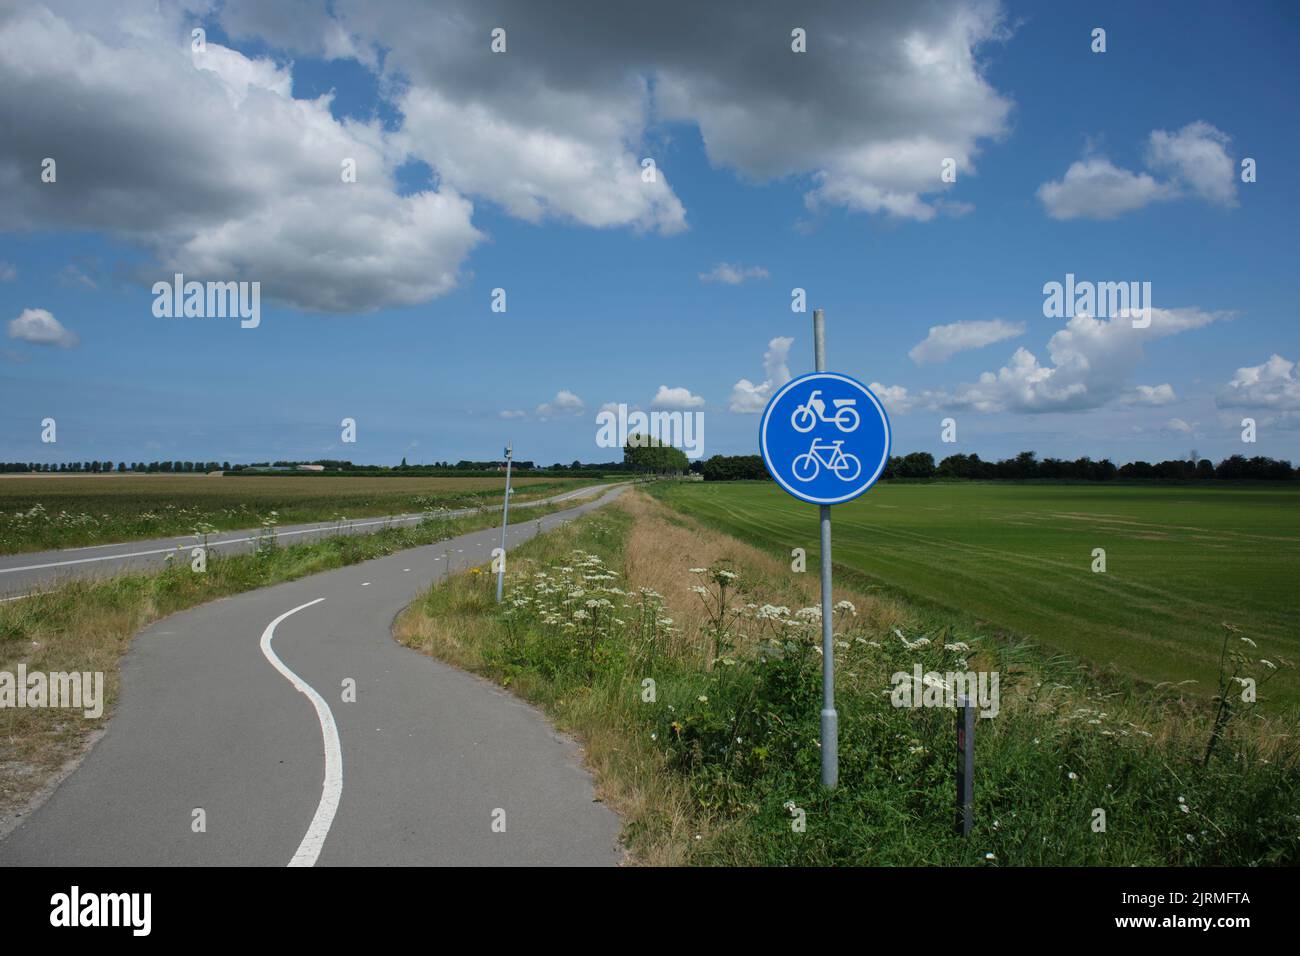 Schlängelnde, düstere Rad- und Wanderwege in einer ländlichen Gegend. Es ist ein leicht bewölktes Wetter zu Beginn des Sommers in den Niederlanden. Stockfoto